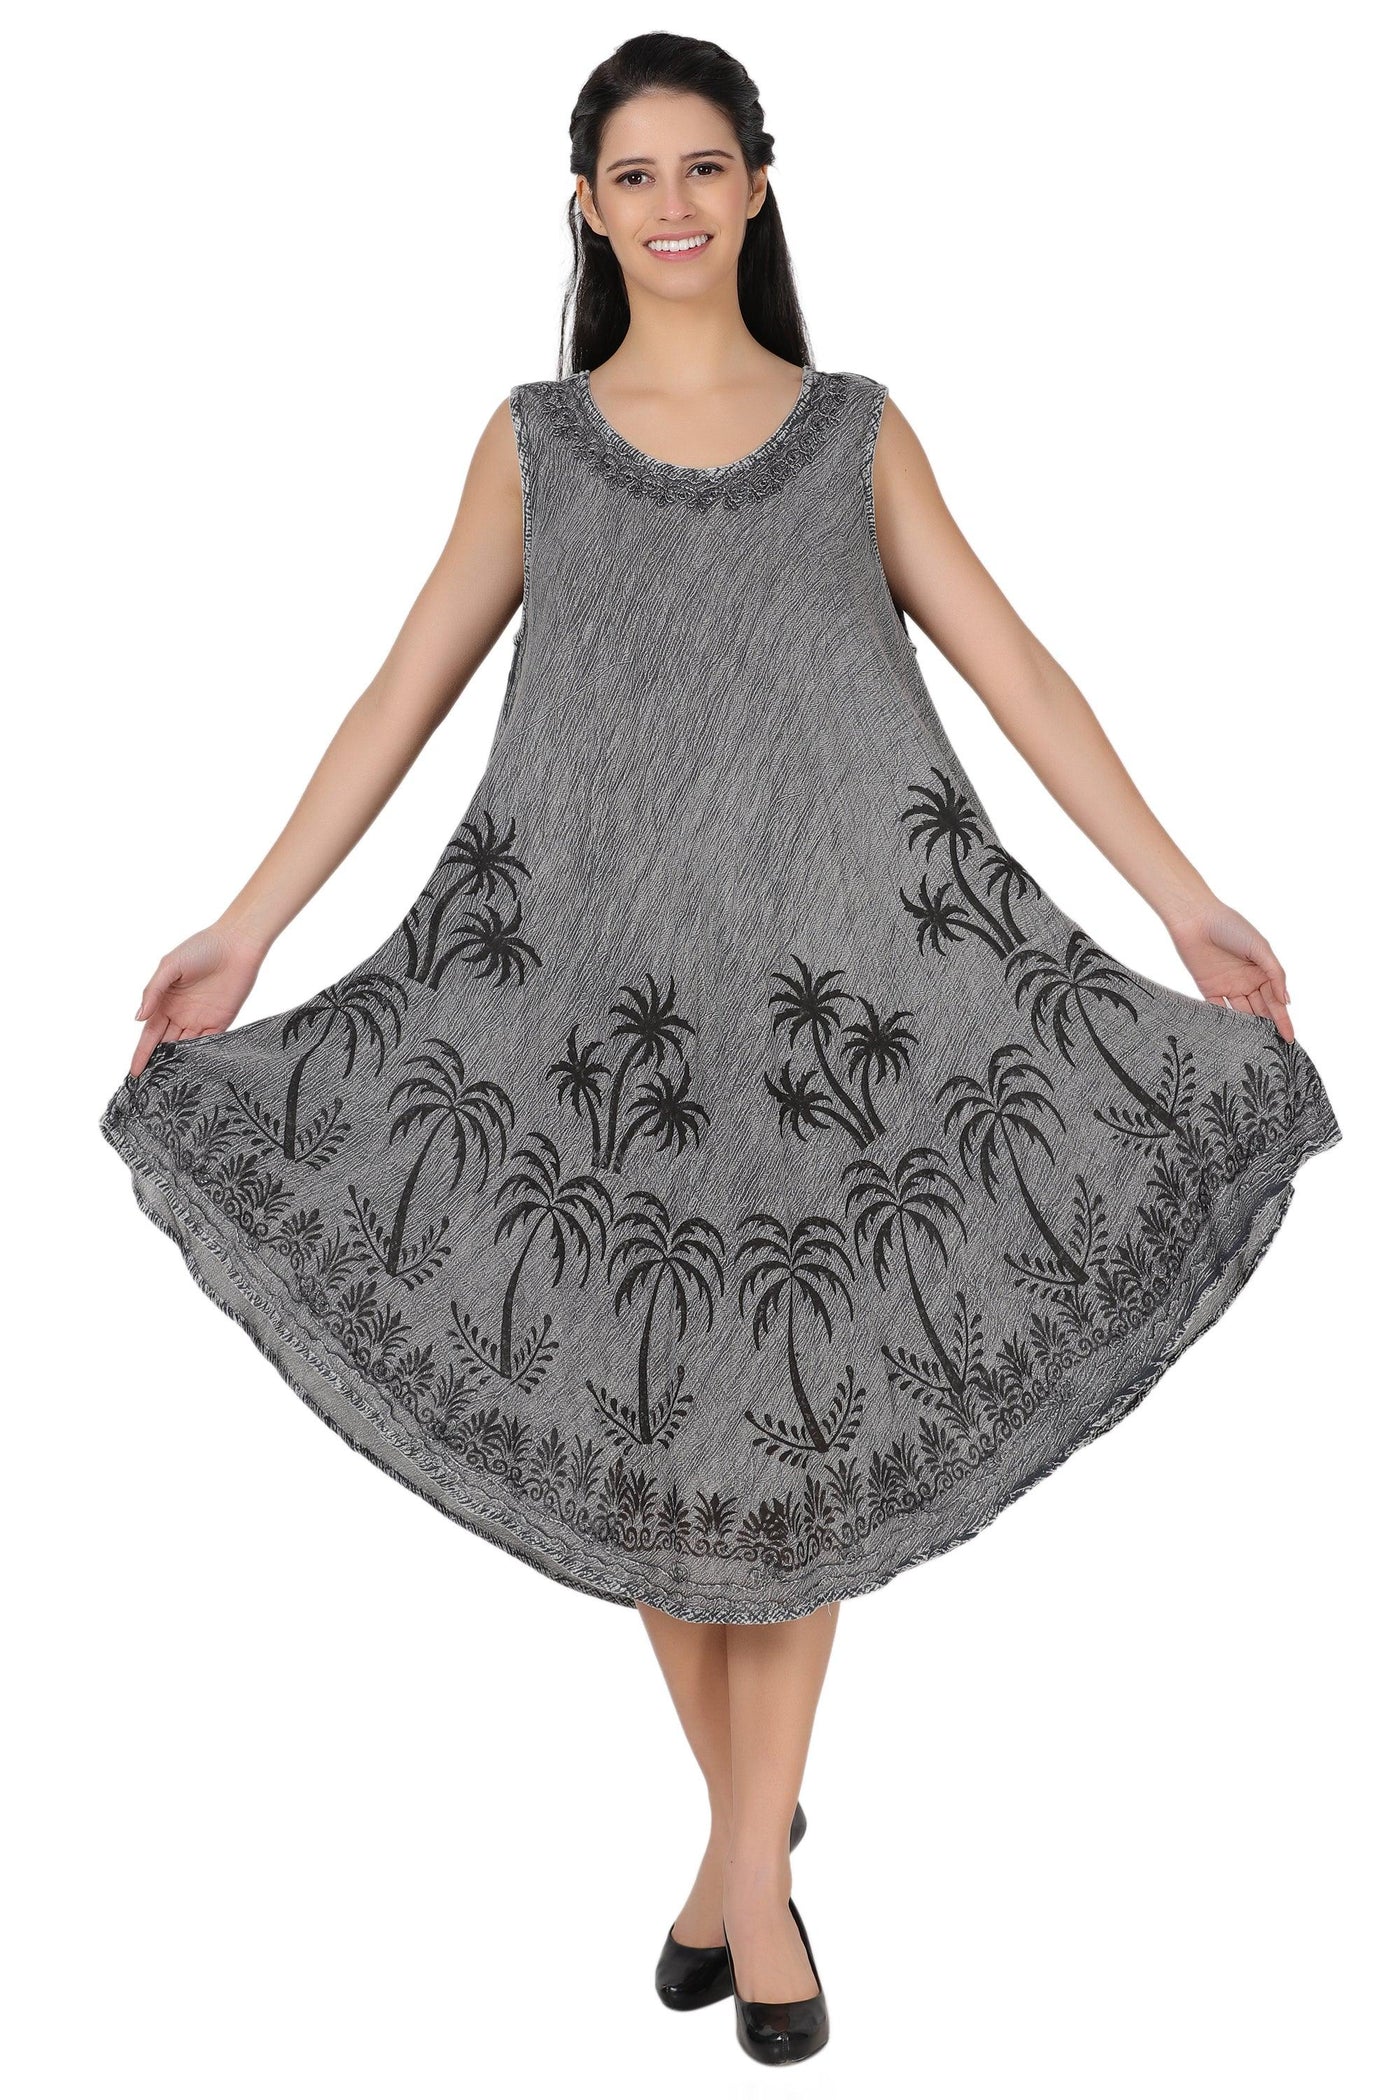 Palm Tree Block Print Dress 482157  - Advance Apparels Inc